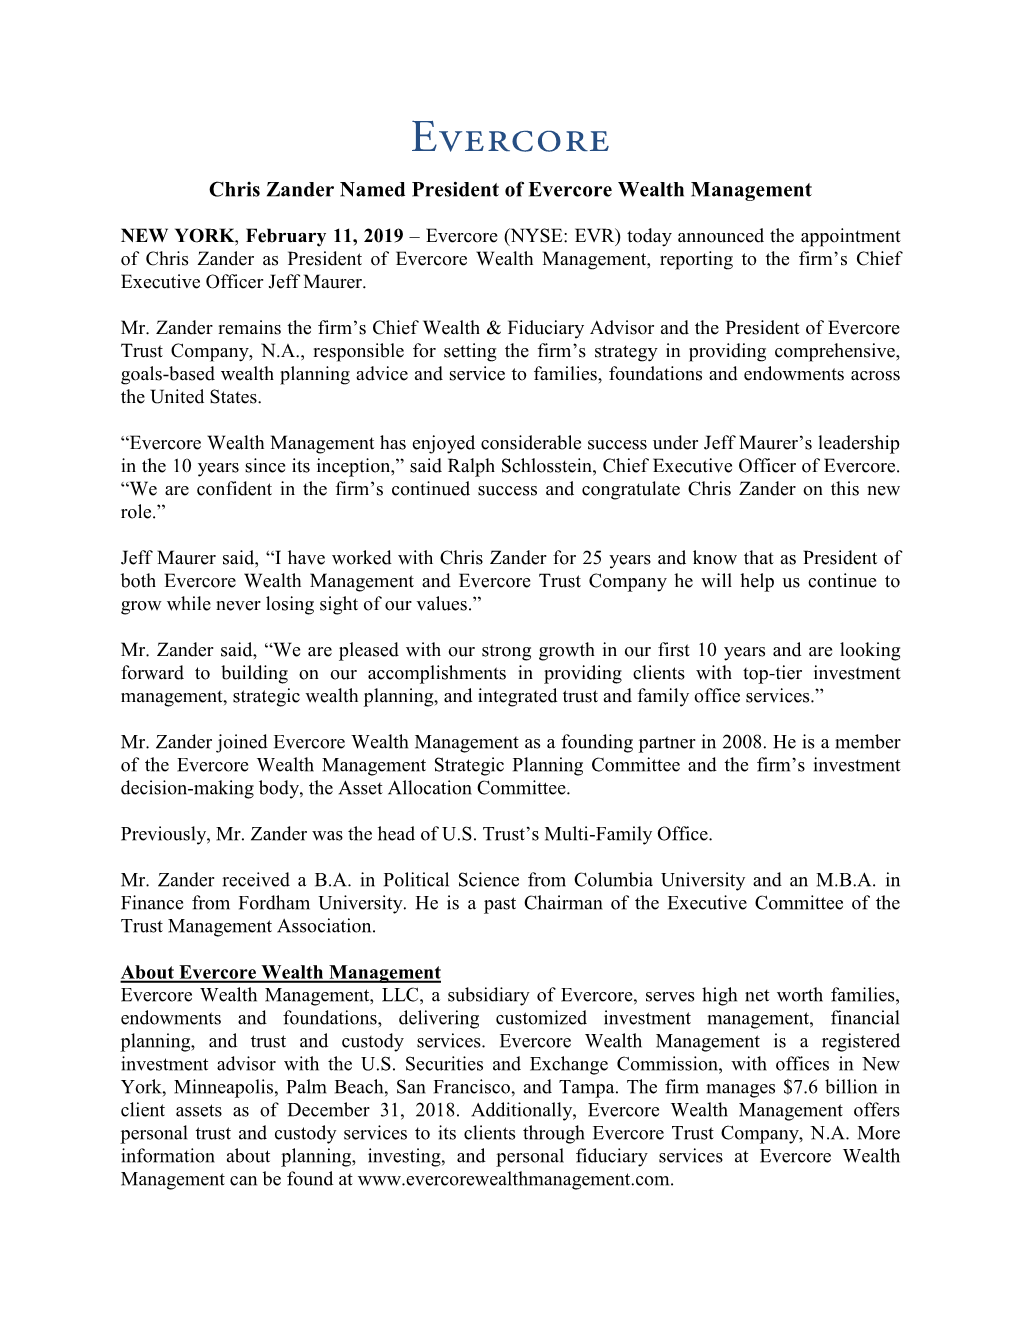 Chris Zander Named President of Evercore Wealth Management